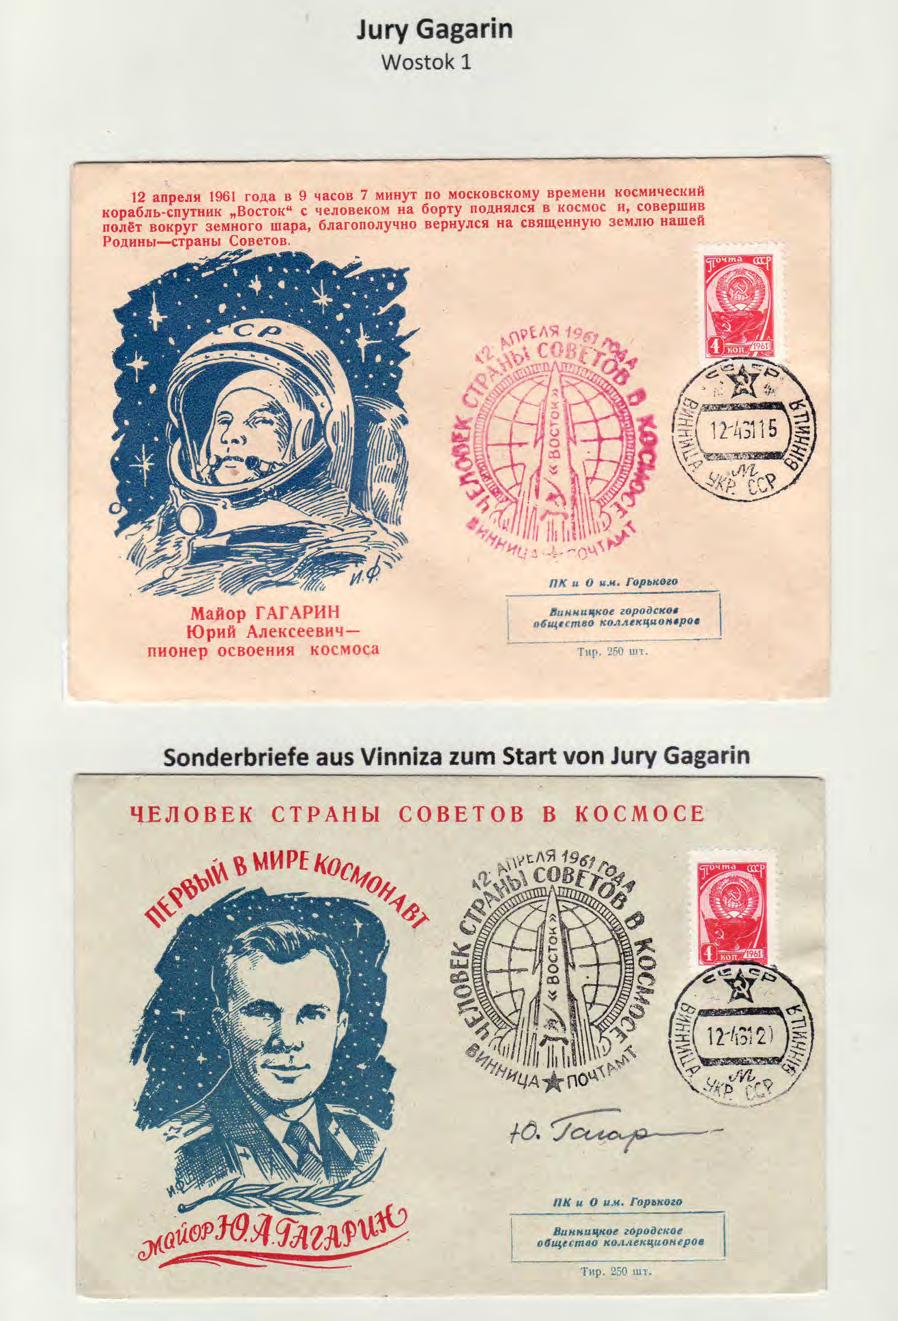 und Ausstellung am 15.1.1959 abgeschlagen und ist mit einer passenden Ziolkowski- Sondermarke immer noch ein beeindruckender Beleg.